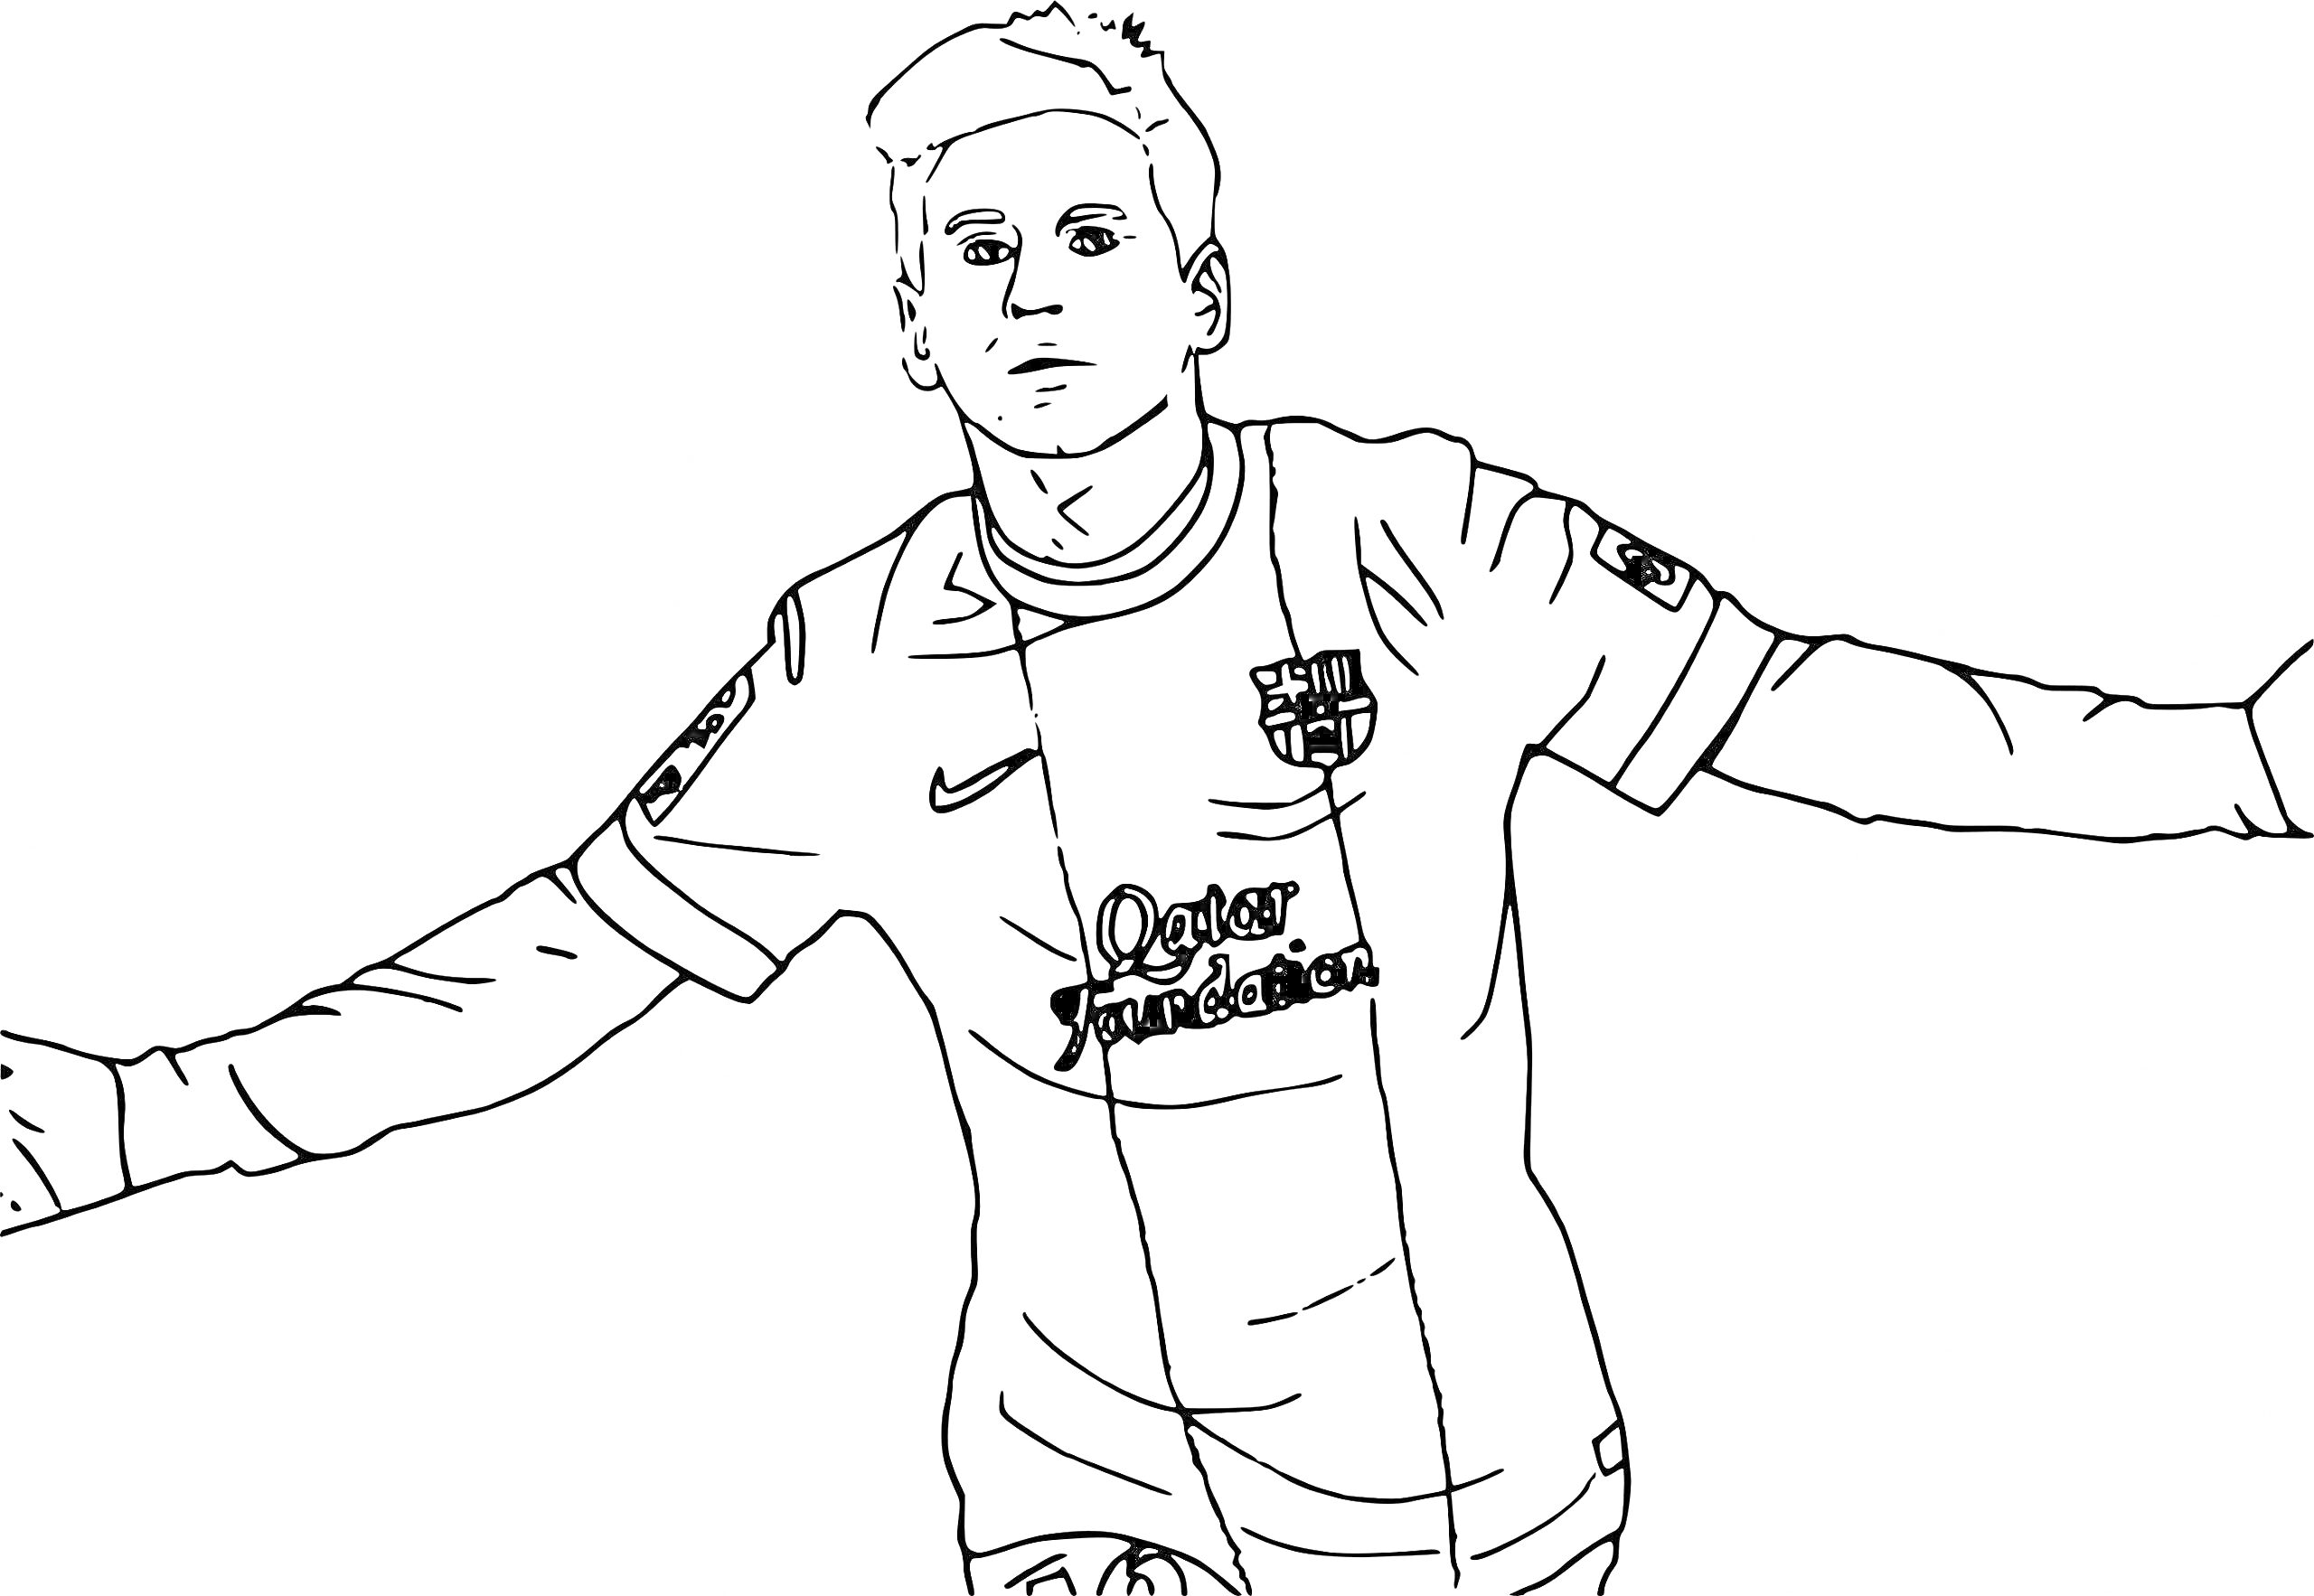 Раскраска Футболист в футболке с эмблемой, раскинувший руки в стороны